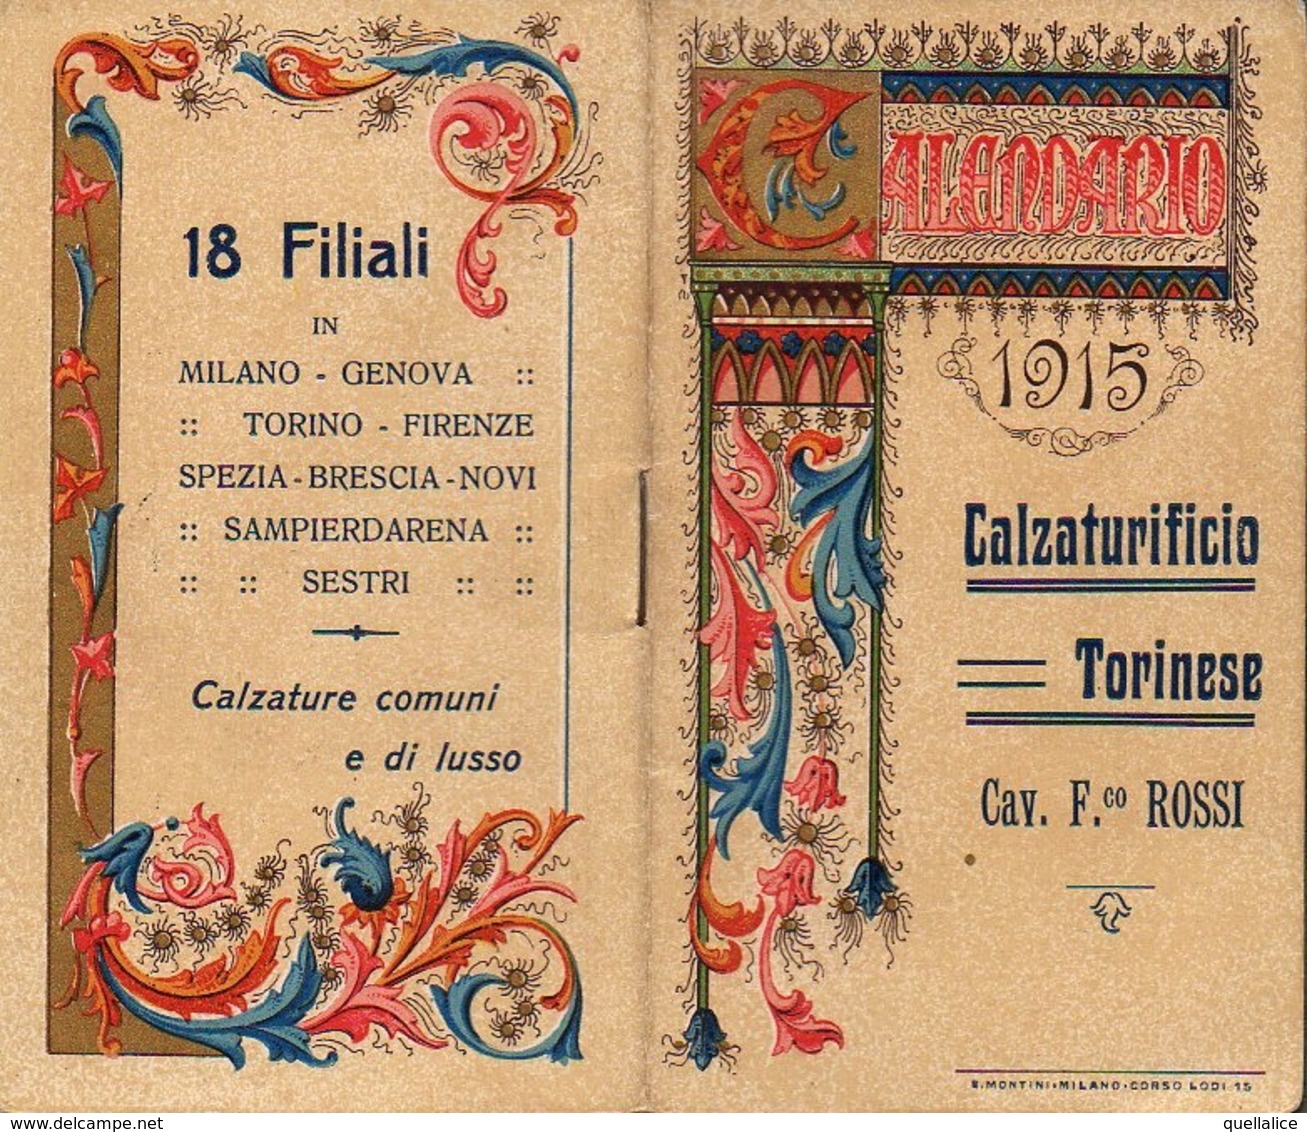 01216 "TORINO - CALZATURIFICIO CAV. F.CO ROSSI - 1915 - CALENDARIETTO DECORATO" - Kleinformat : 1901-20